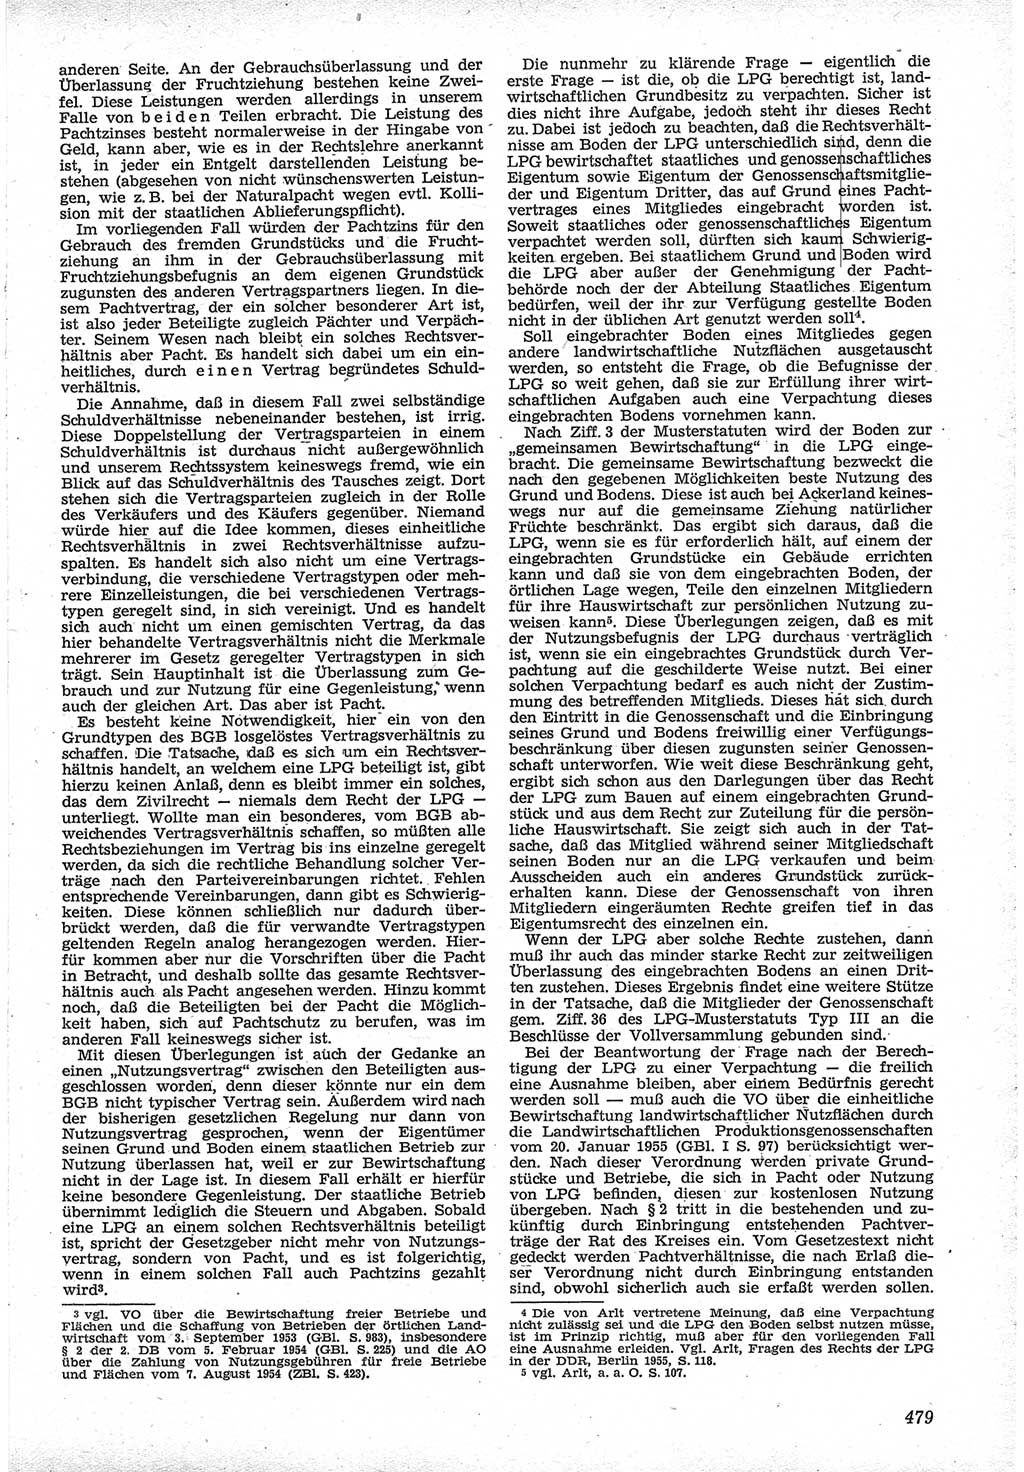 Neue Justiz (NJ), Zeitschrift für Recht und Rechtswissenschaft [Deutsche Demokratische Republik (DDR)], 12. Jahrgang 1958, Seite 479 (NJ DDR 1958, S. 479)